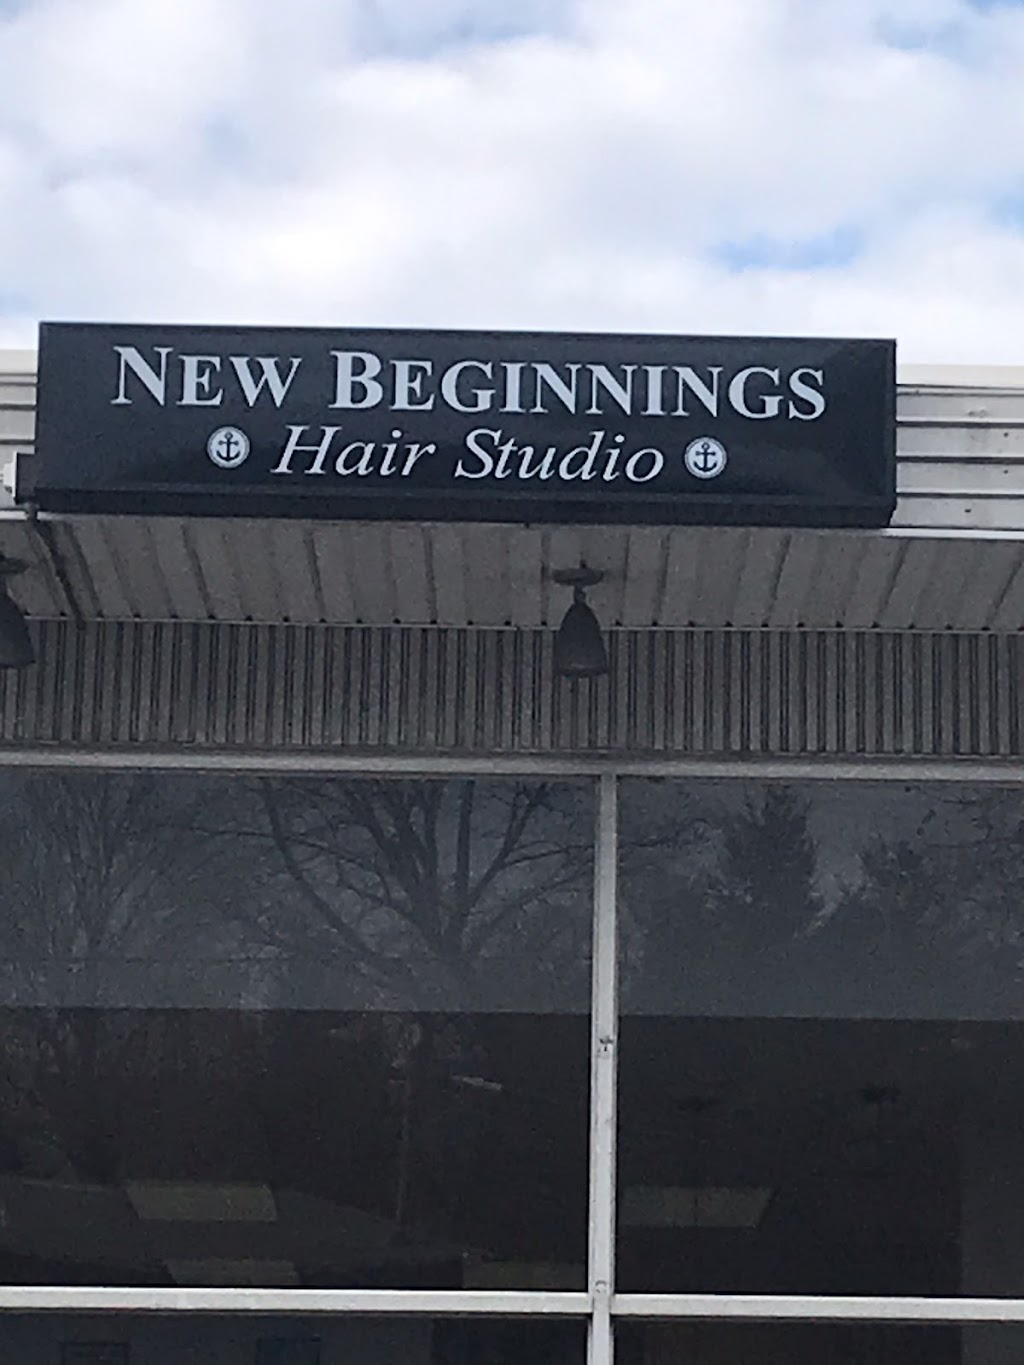 New Beginnings Hair Studio | 125 Gulf St, Milford, CT 06460 | Phone: (203) 874-4411